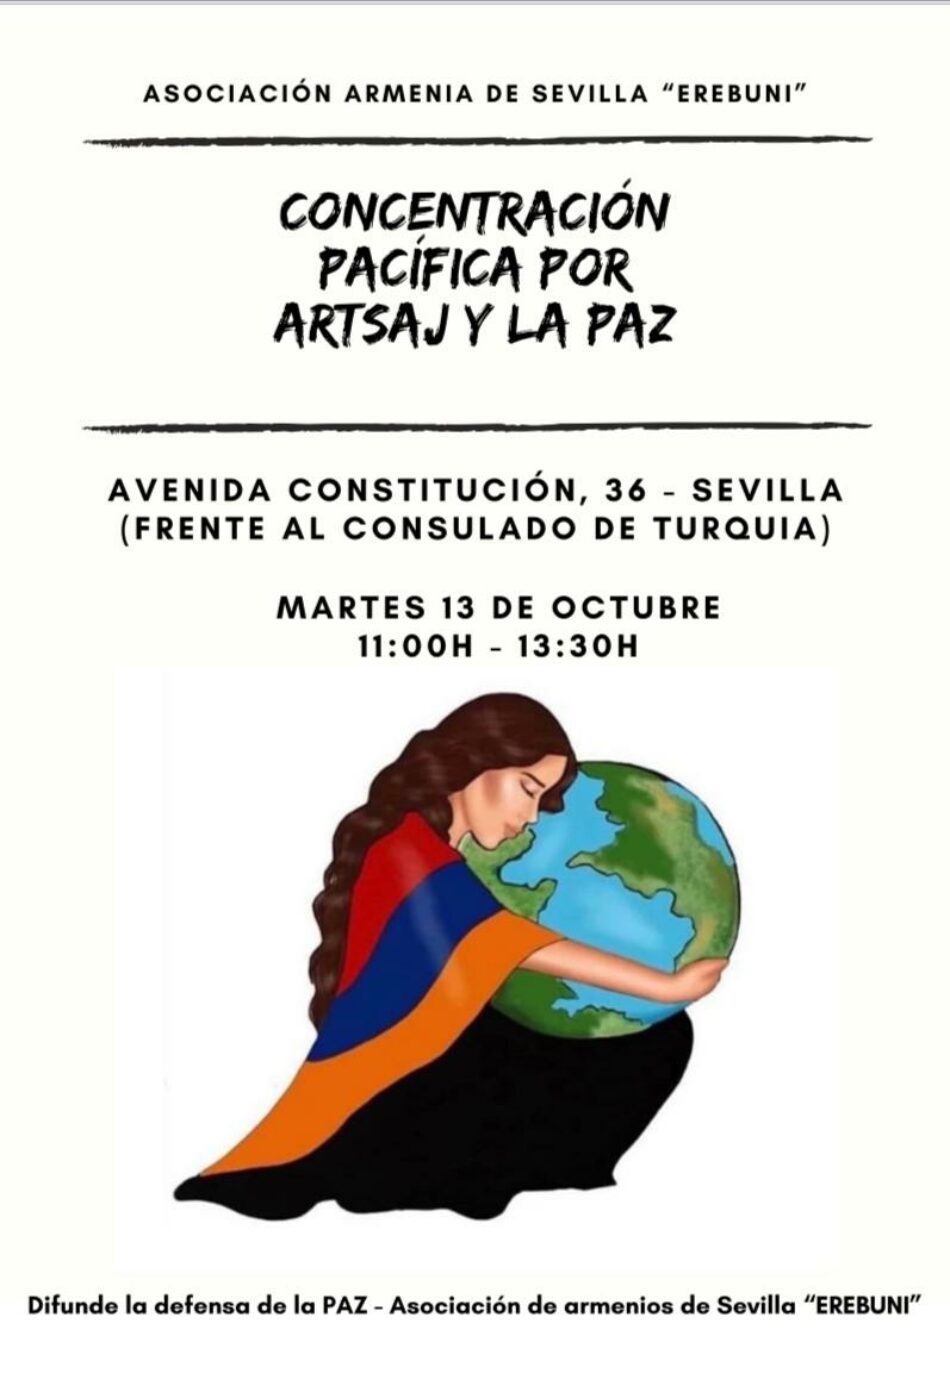 La comunidad armenia de Sevilla se manifestará el 13 de octubre frente al consulado de Turquía por la paz en Artsaj